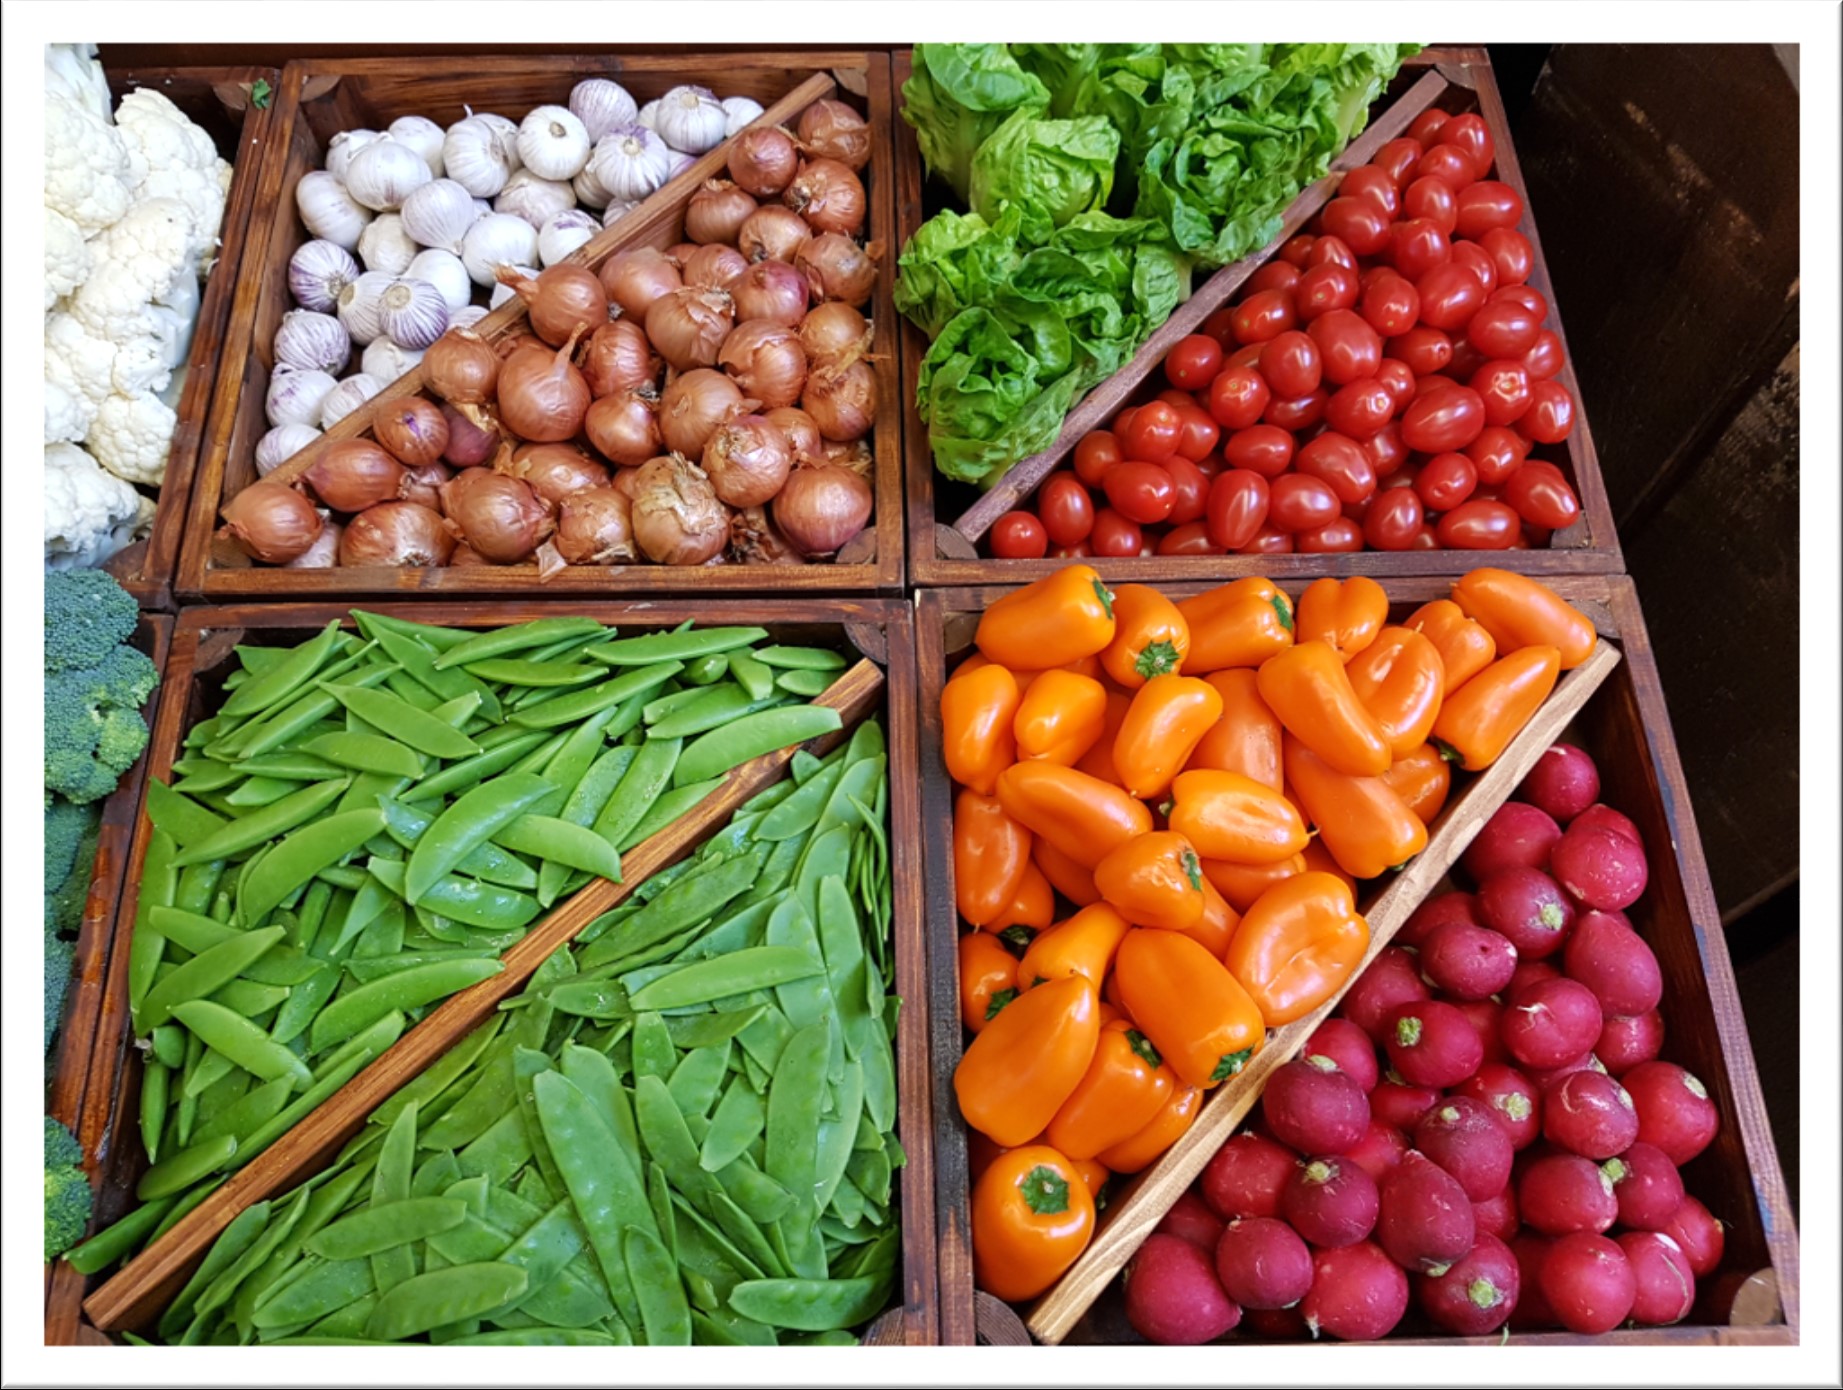 Één van de voordelen van groente op maat is dat je makkelijk kan variëren met het assortiment.